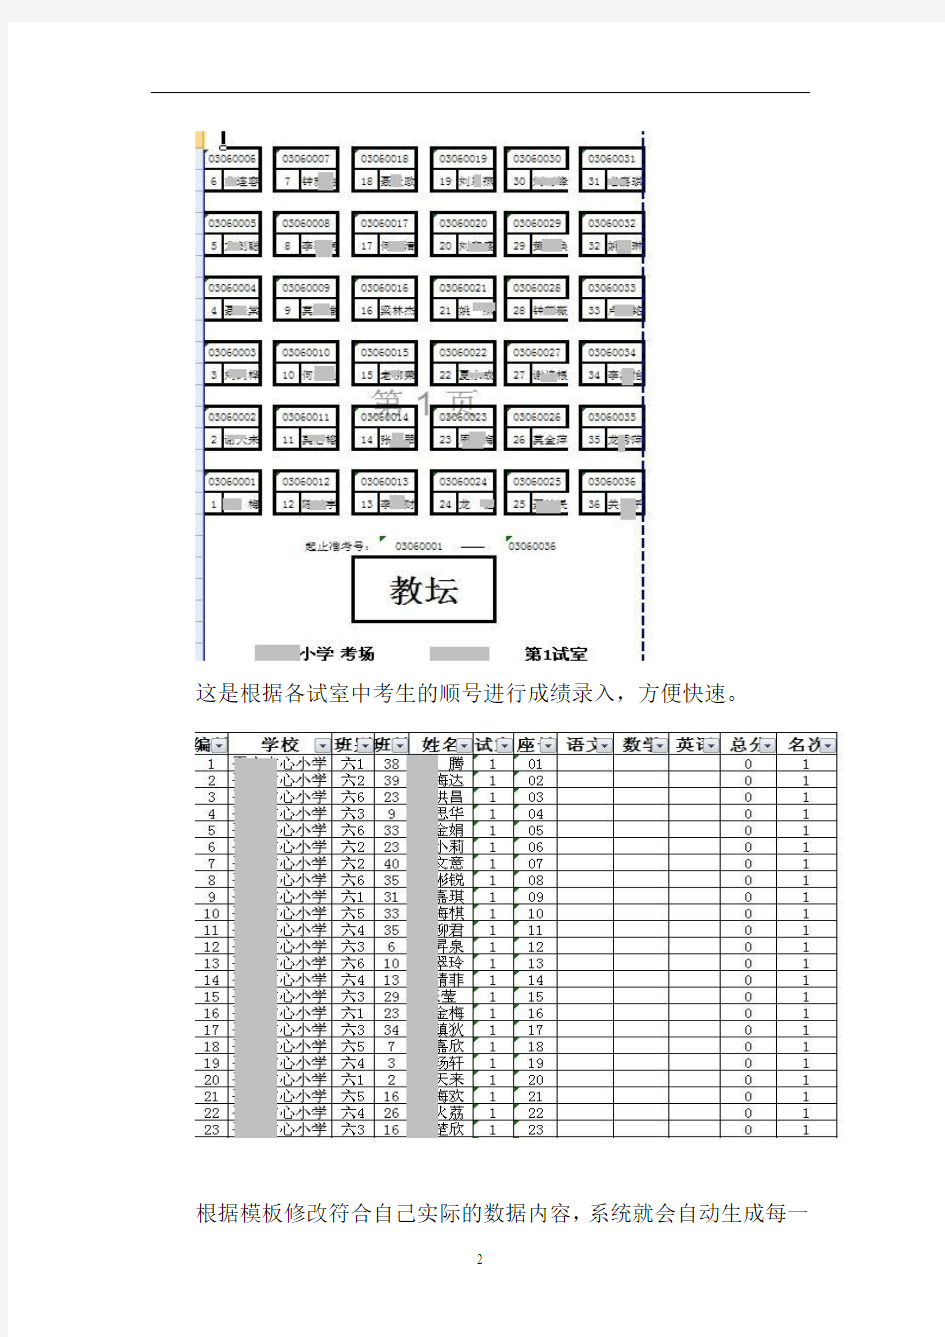 考试座位自动编排系统